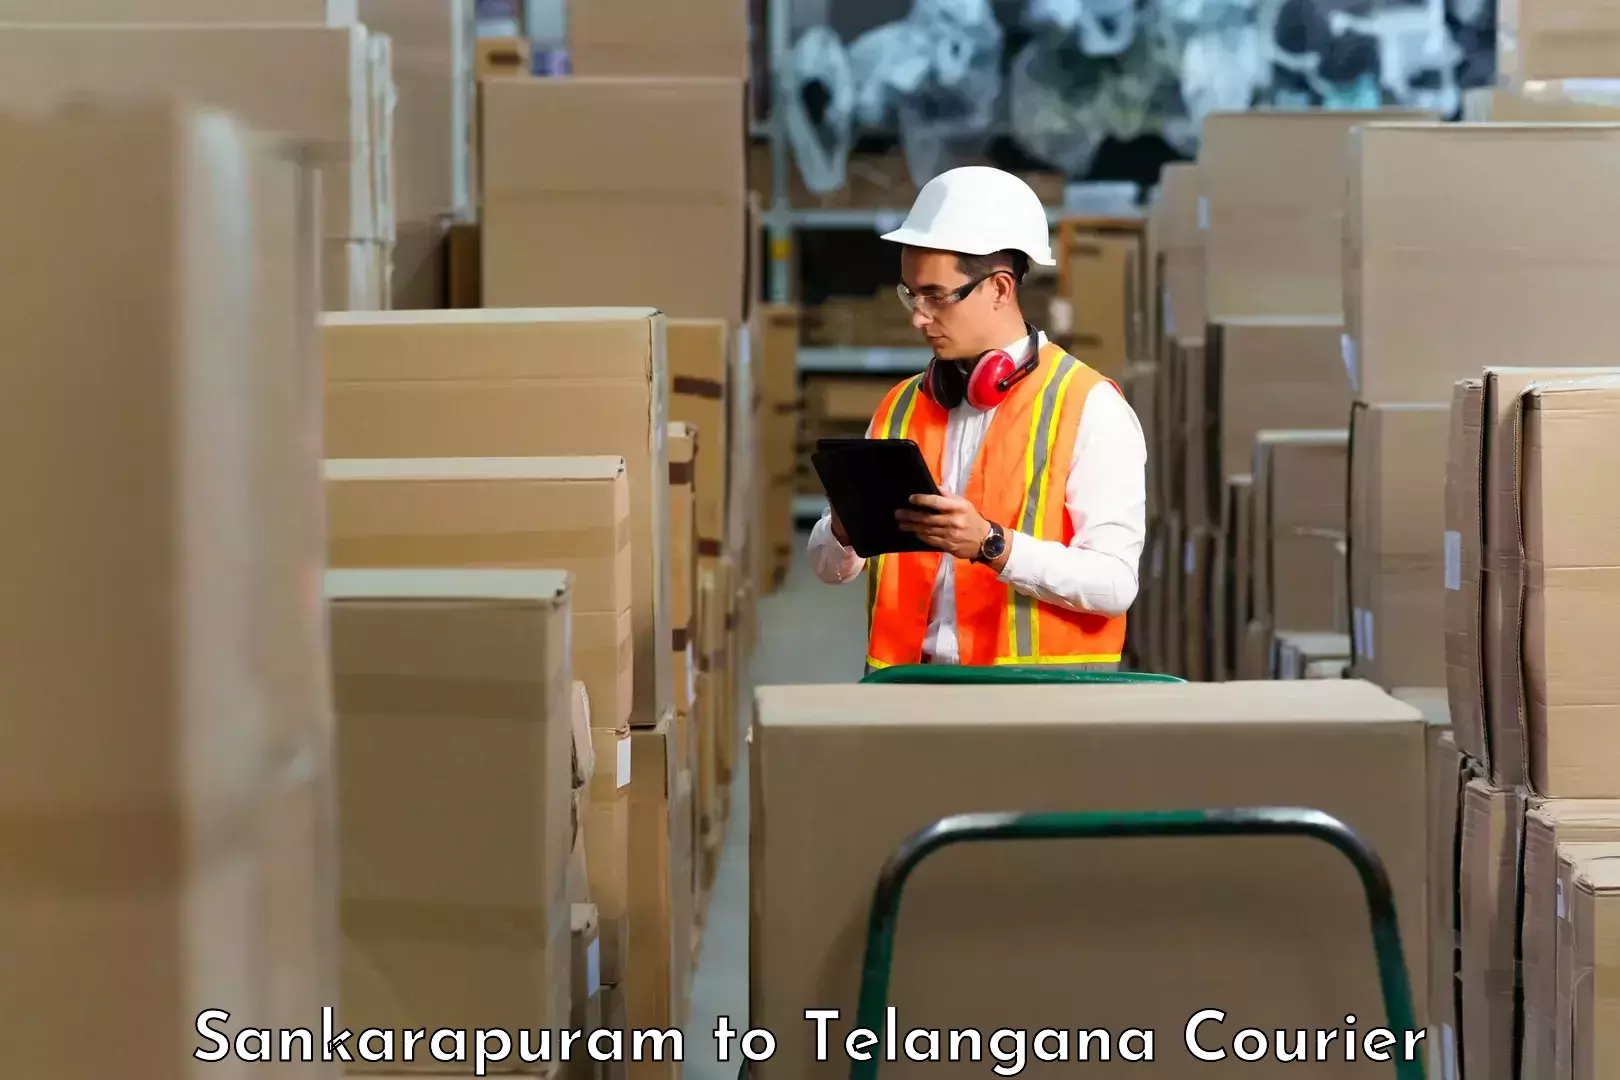 Next-generation courier services Sankarapuram to Hyderabad